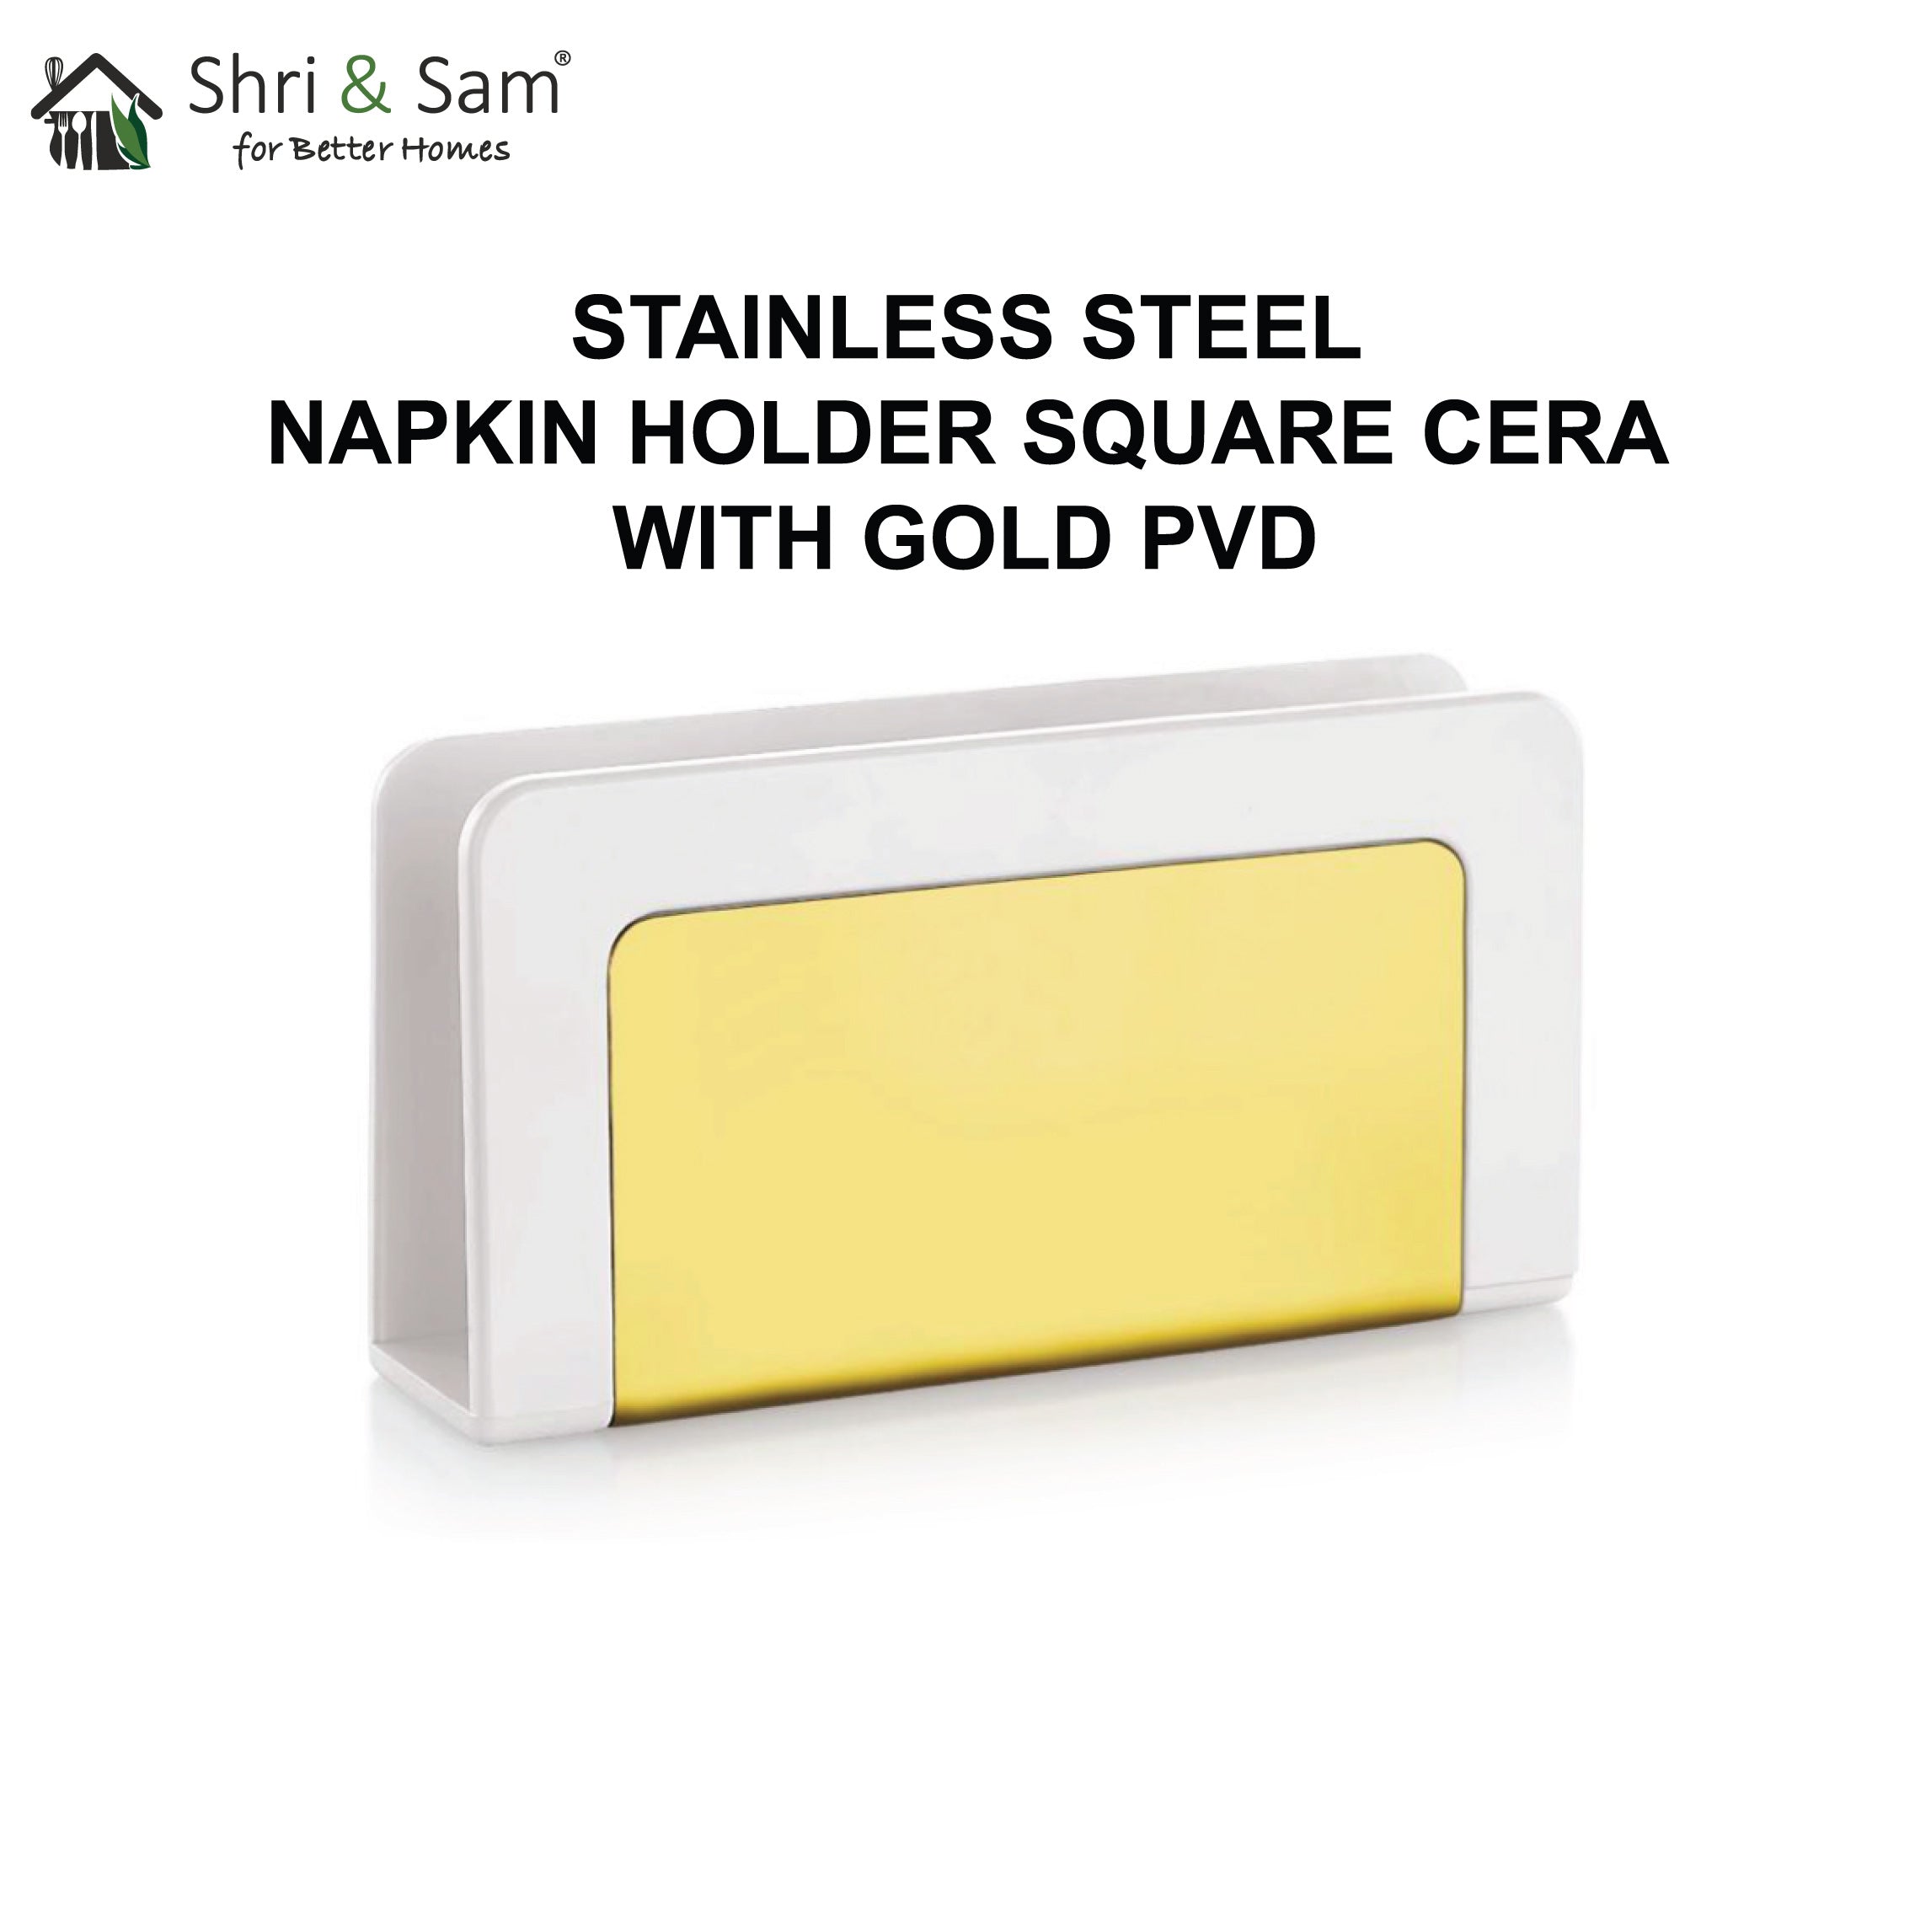 Stainless Steel Square Cera Napkin Holder